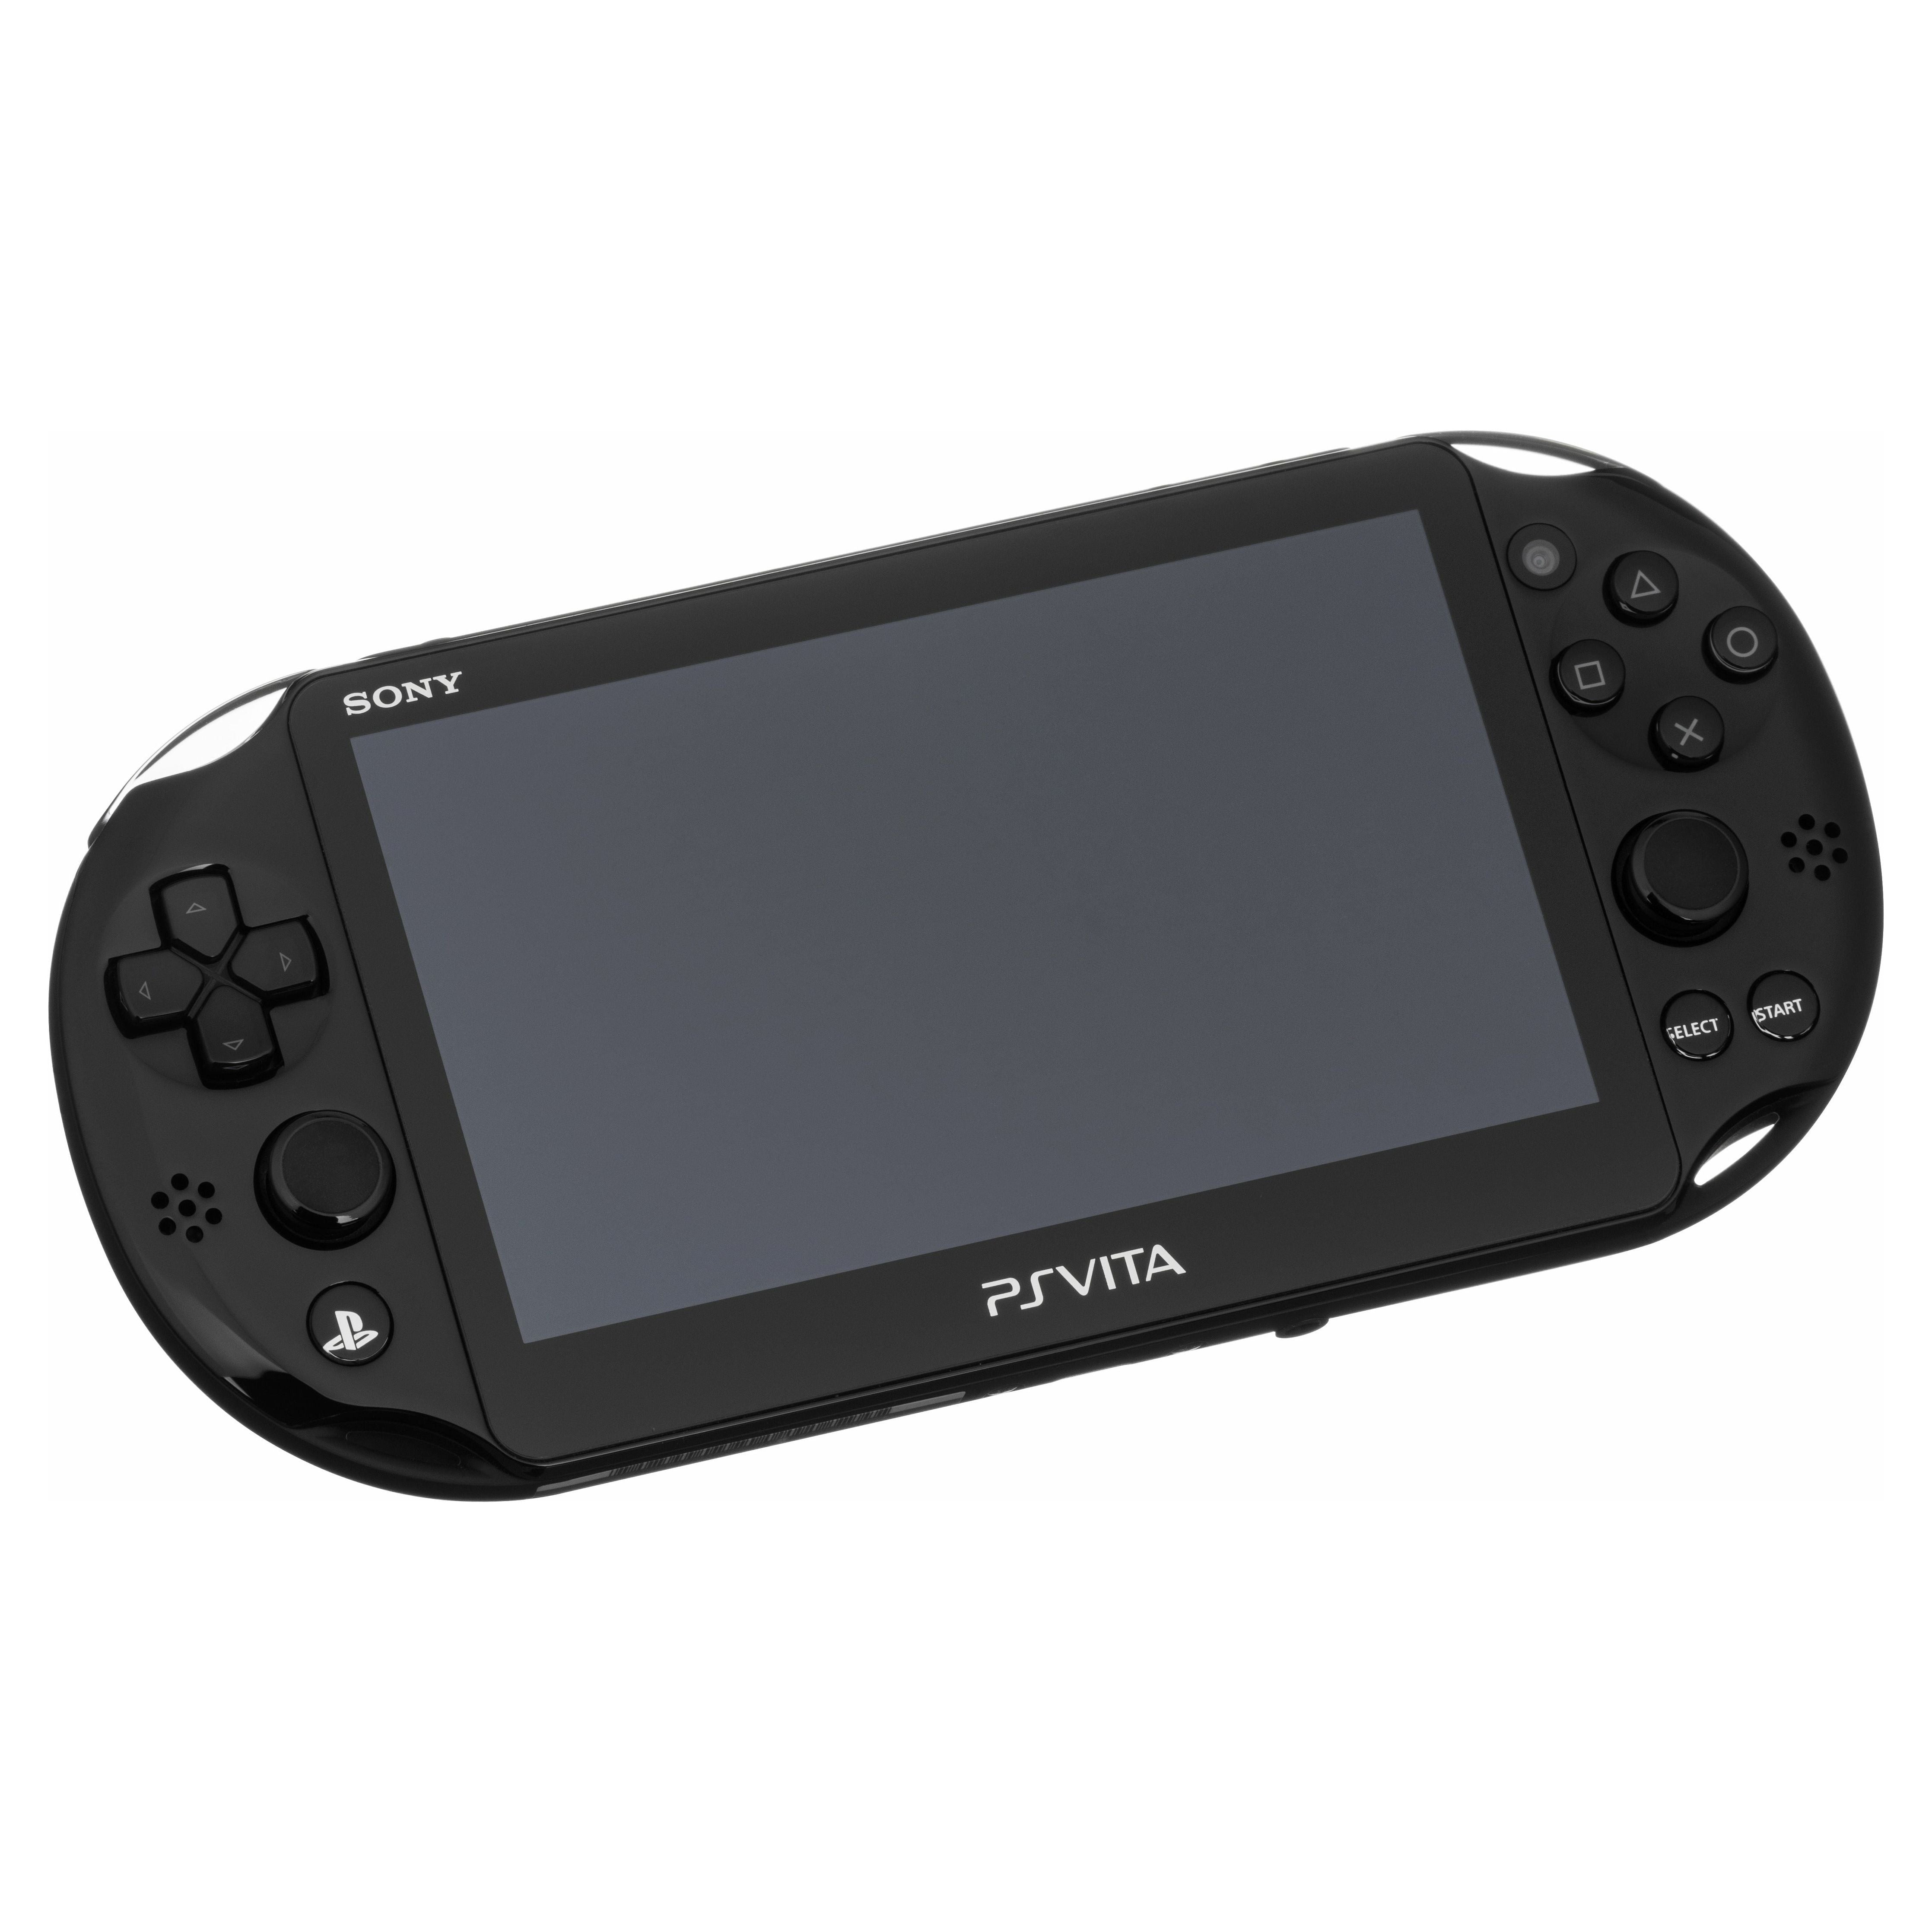 Système PS Vita – Modèle 2001 (Noir)